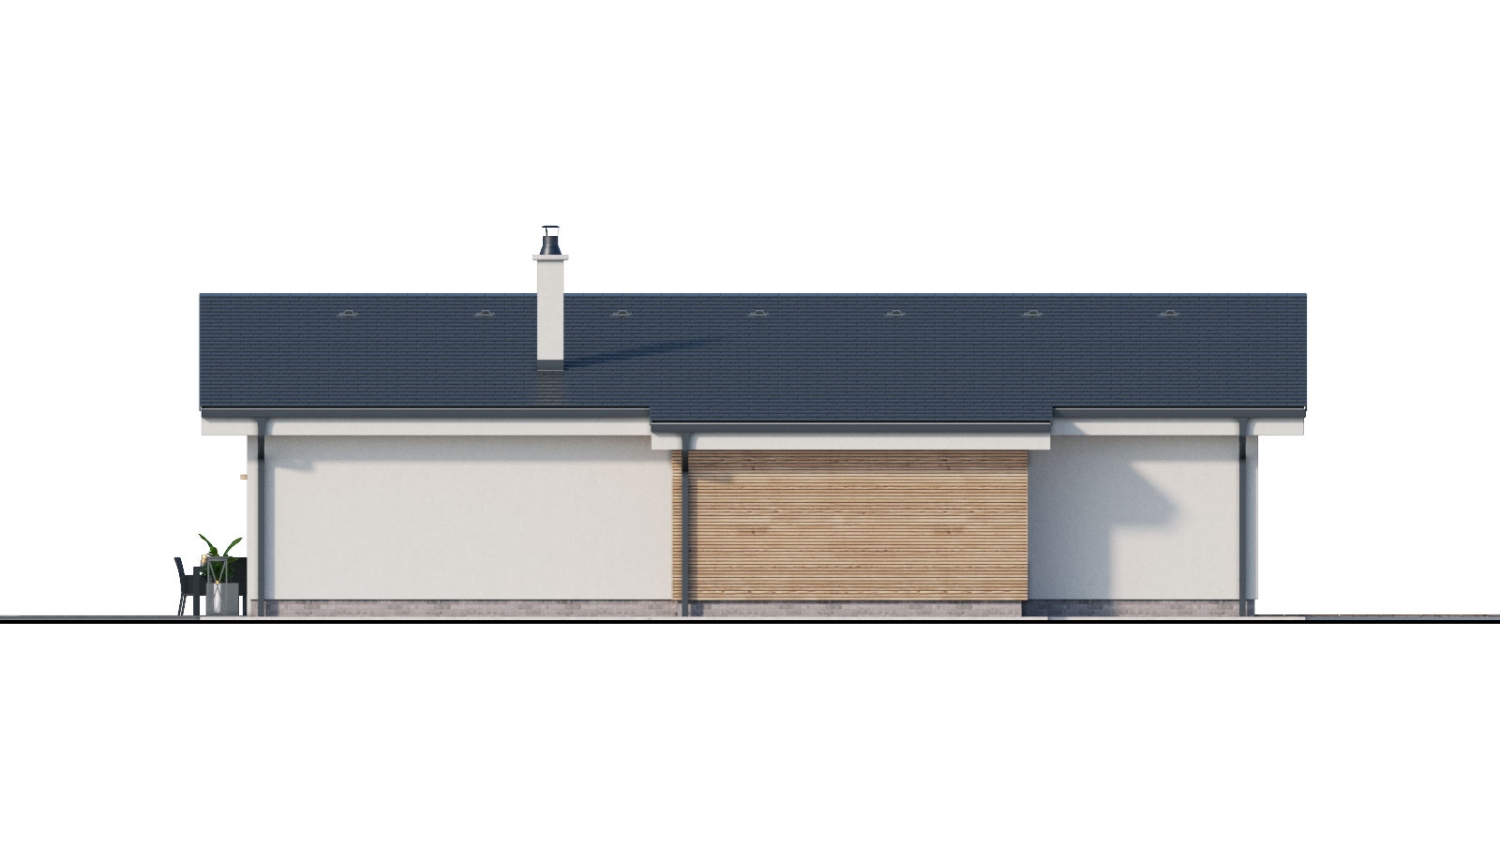 Zrkadlový pohľad 4. - projekt moderního bungalovu s garáží vhodného pro 4 až 6 člennou rodinu